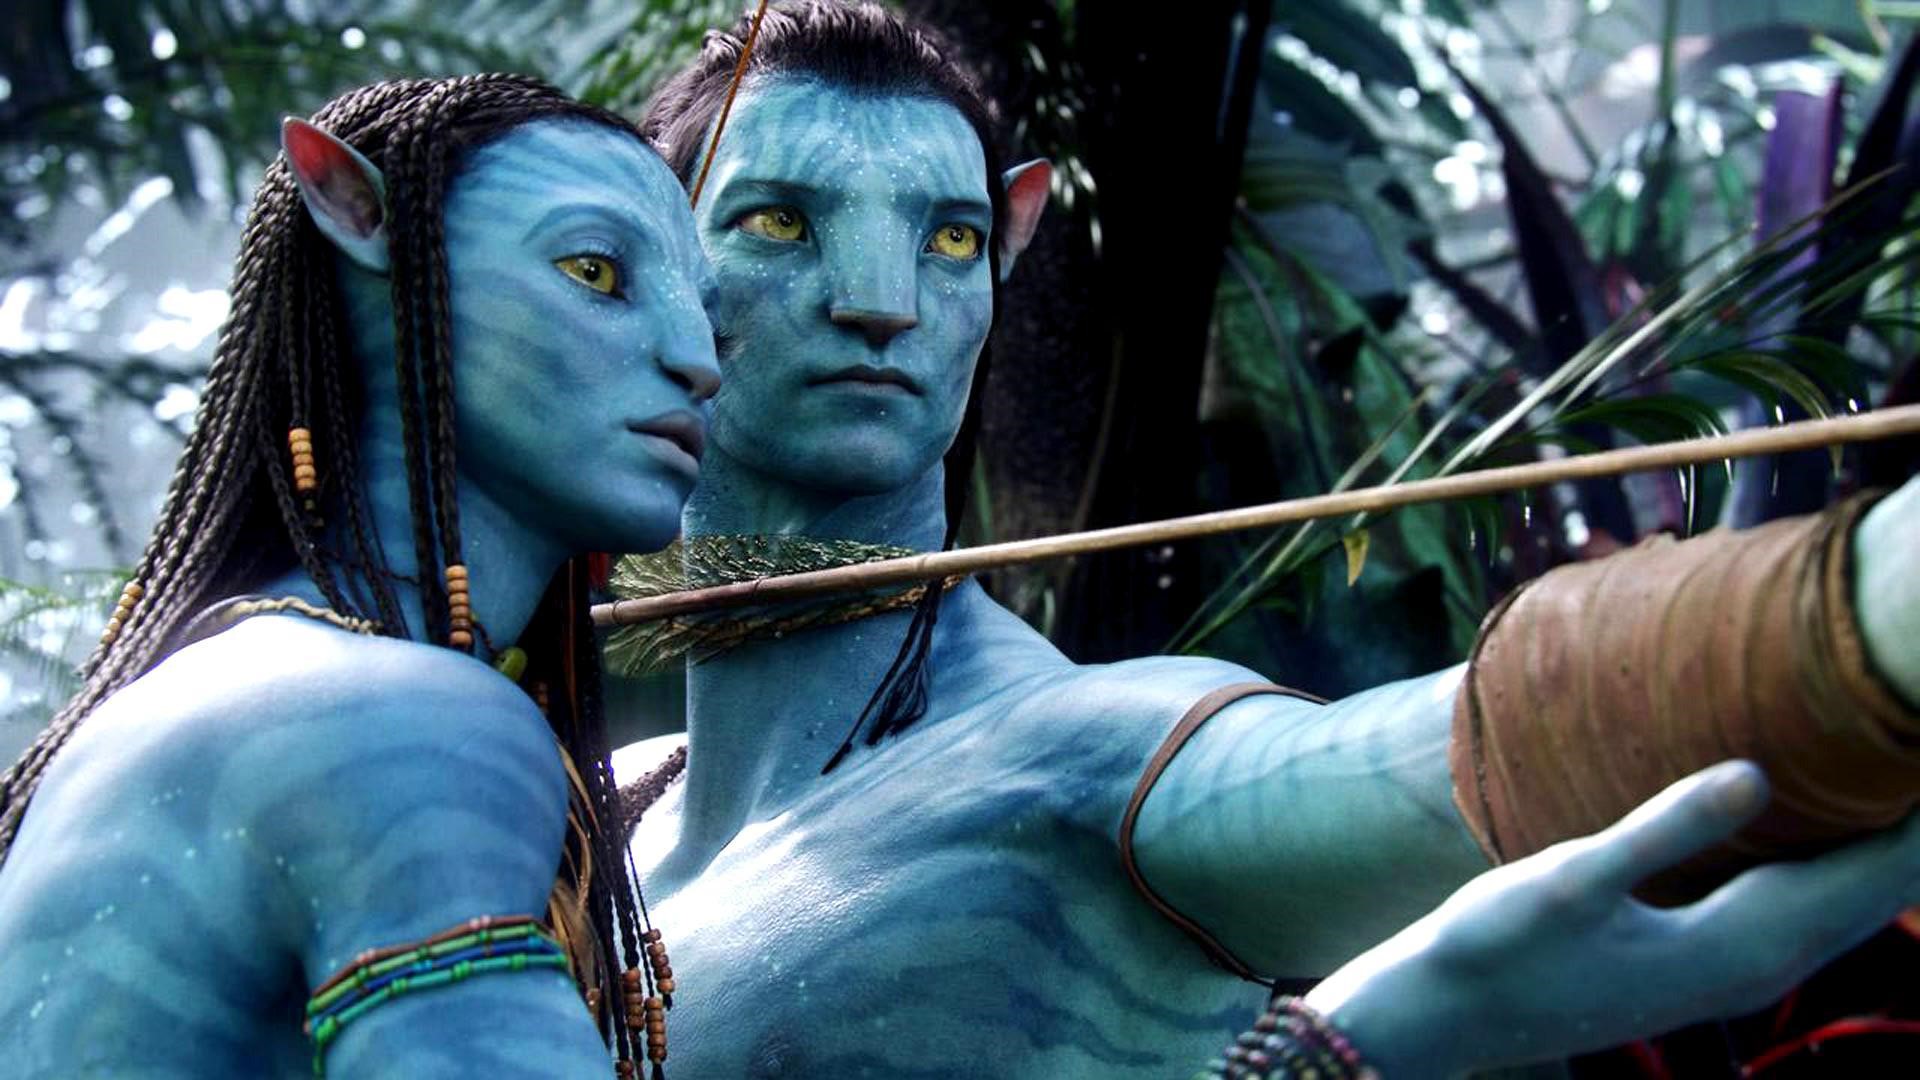 Avatar: The Way of Water passerar Star Wars – nu fjärde största biosuccén